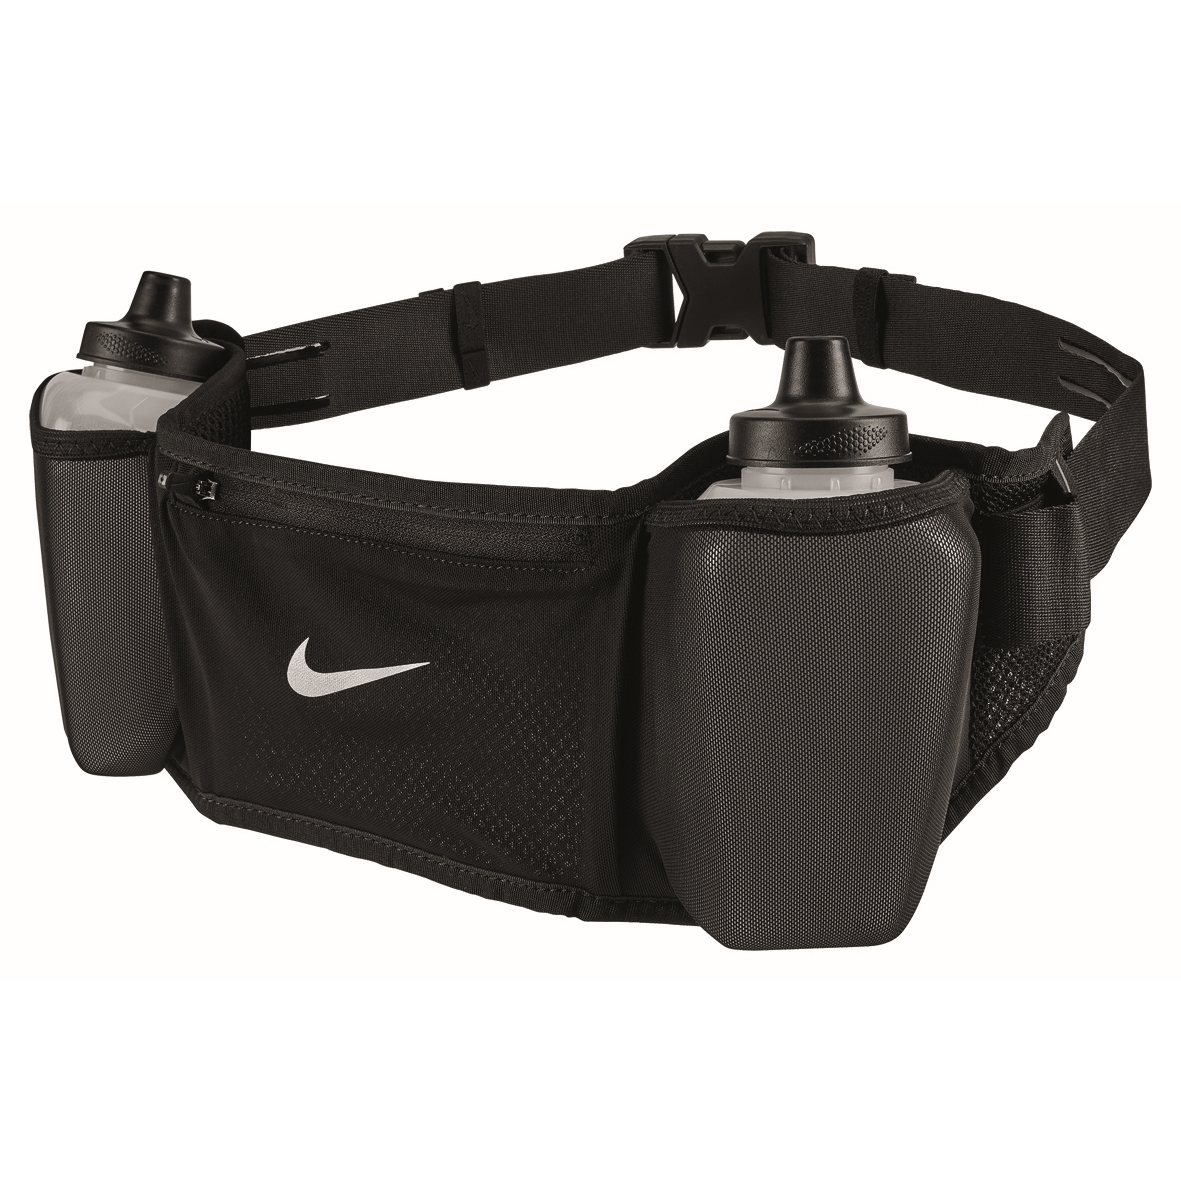 Produktbild von Nike Flex Stride Double Trinkgürtel 24 oz / 709ml - schwarz/schwarz/silber 082